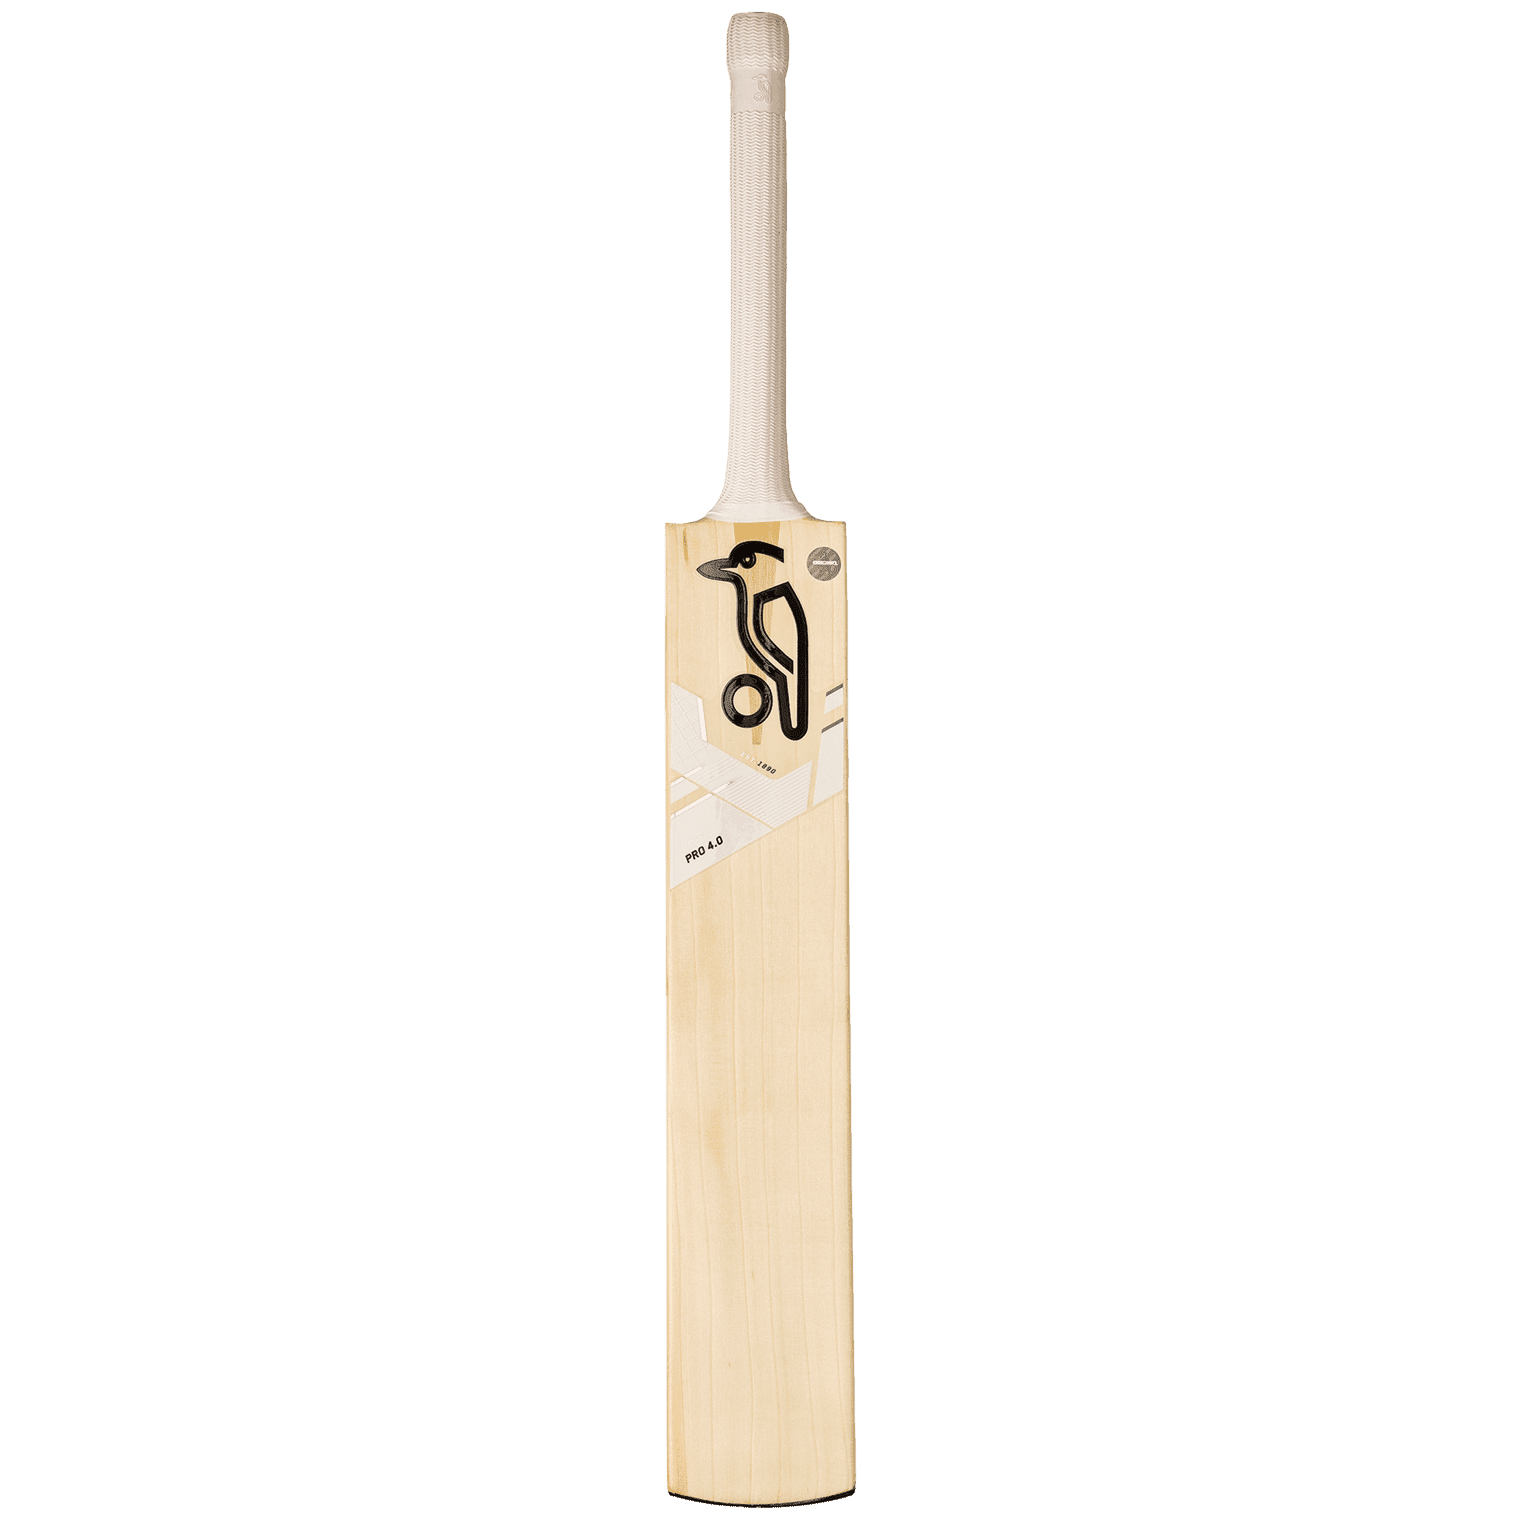 Kookaburra Cricket Bats LB / 2'9 Kookaburra Ghost Pro 4.0 Adult Cricket Bat 2021